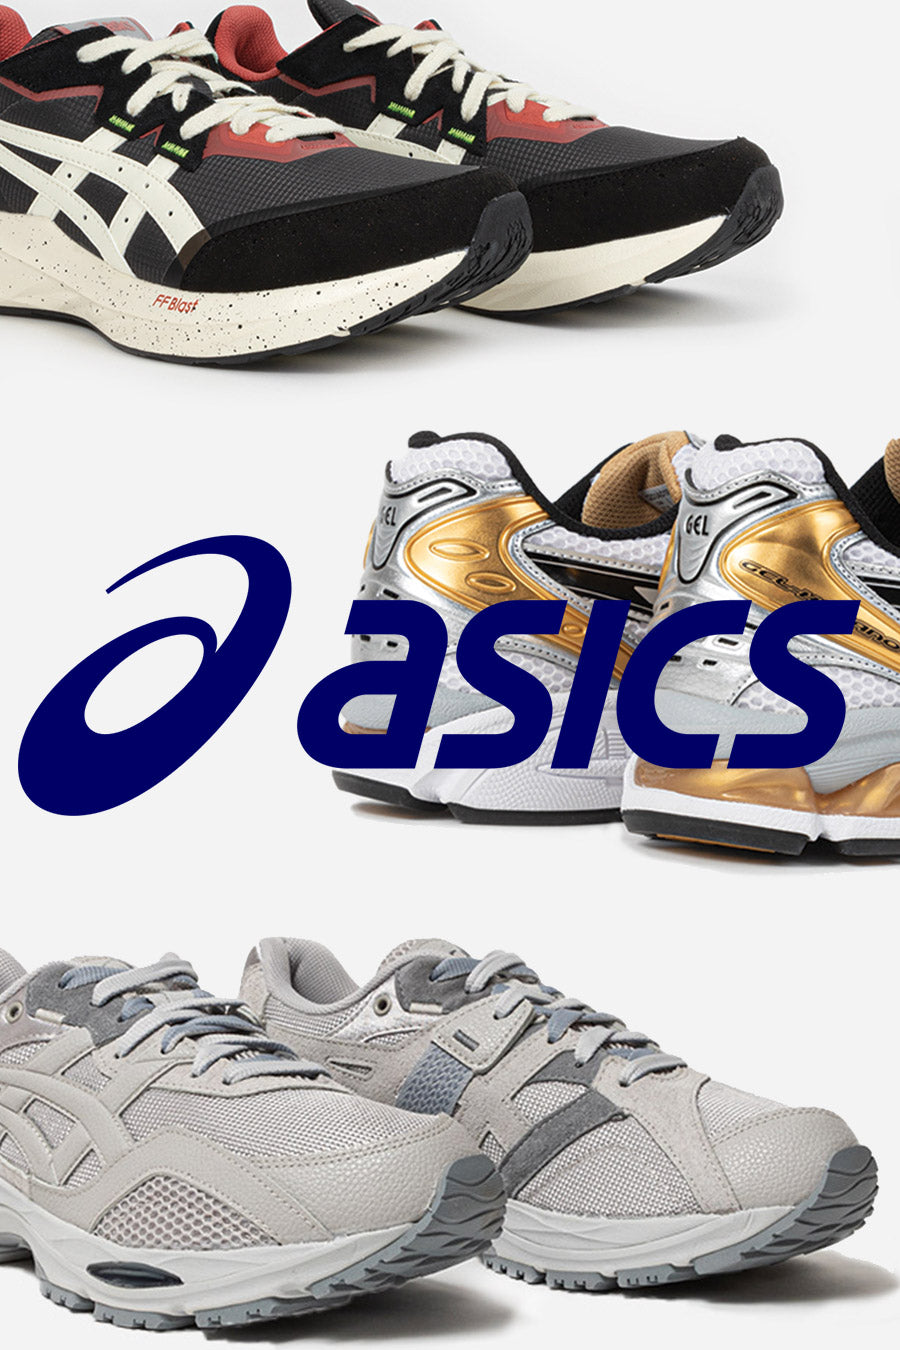 conjunción Centro comercial En todo el mundo Asics Shoes - Wallace Mercantile Shop